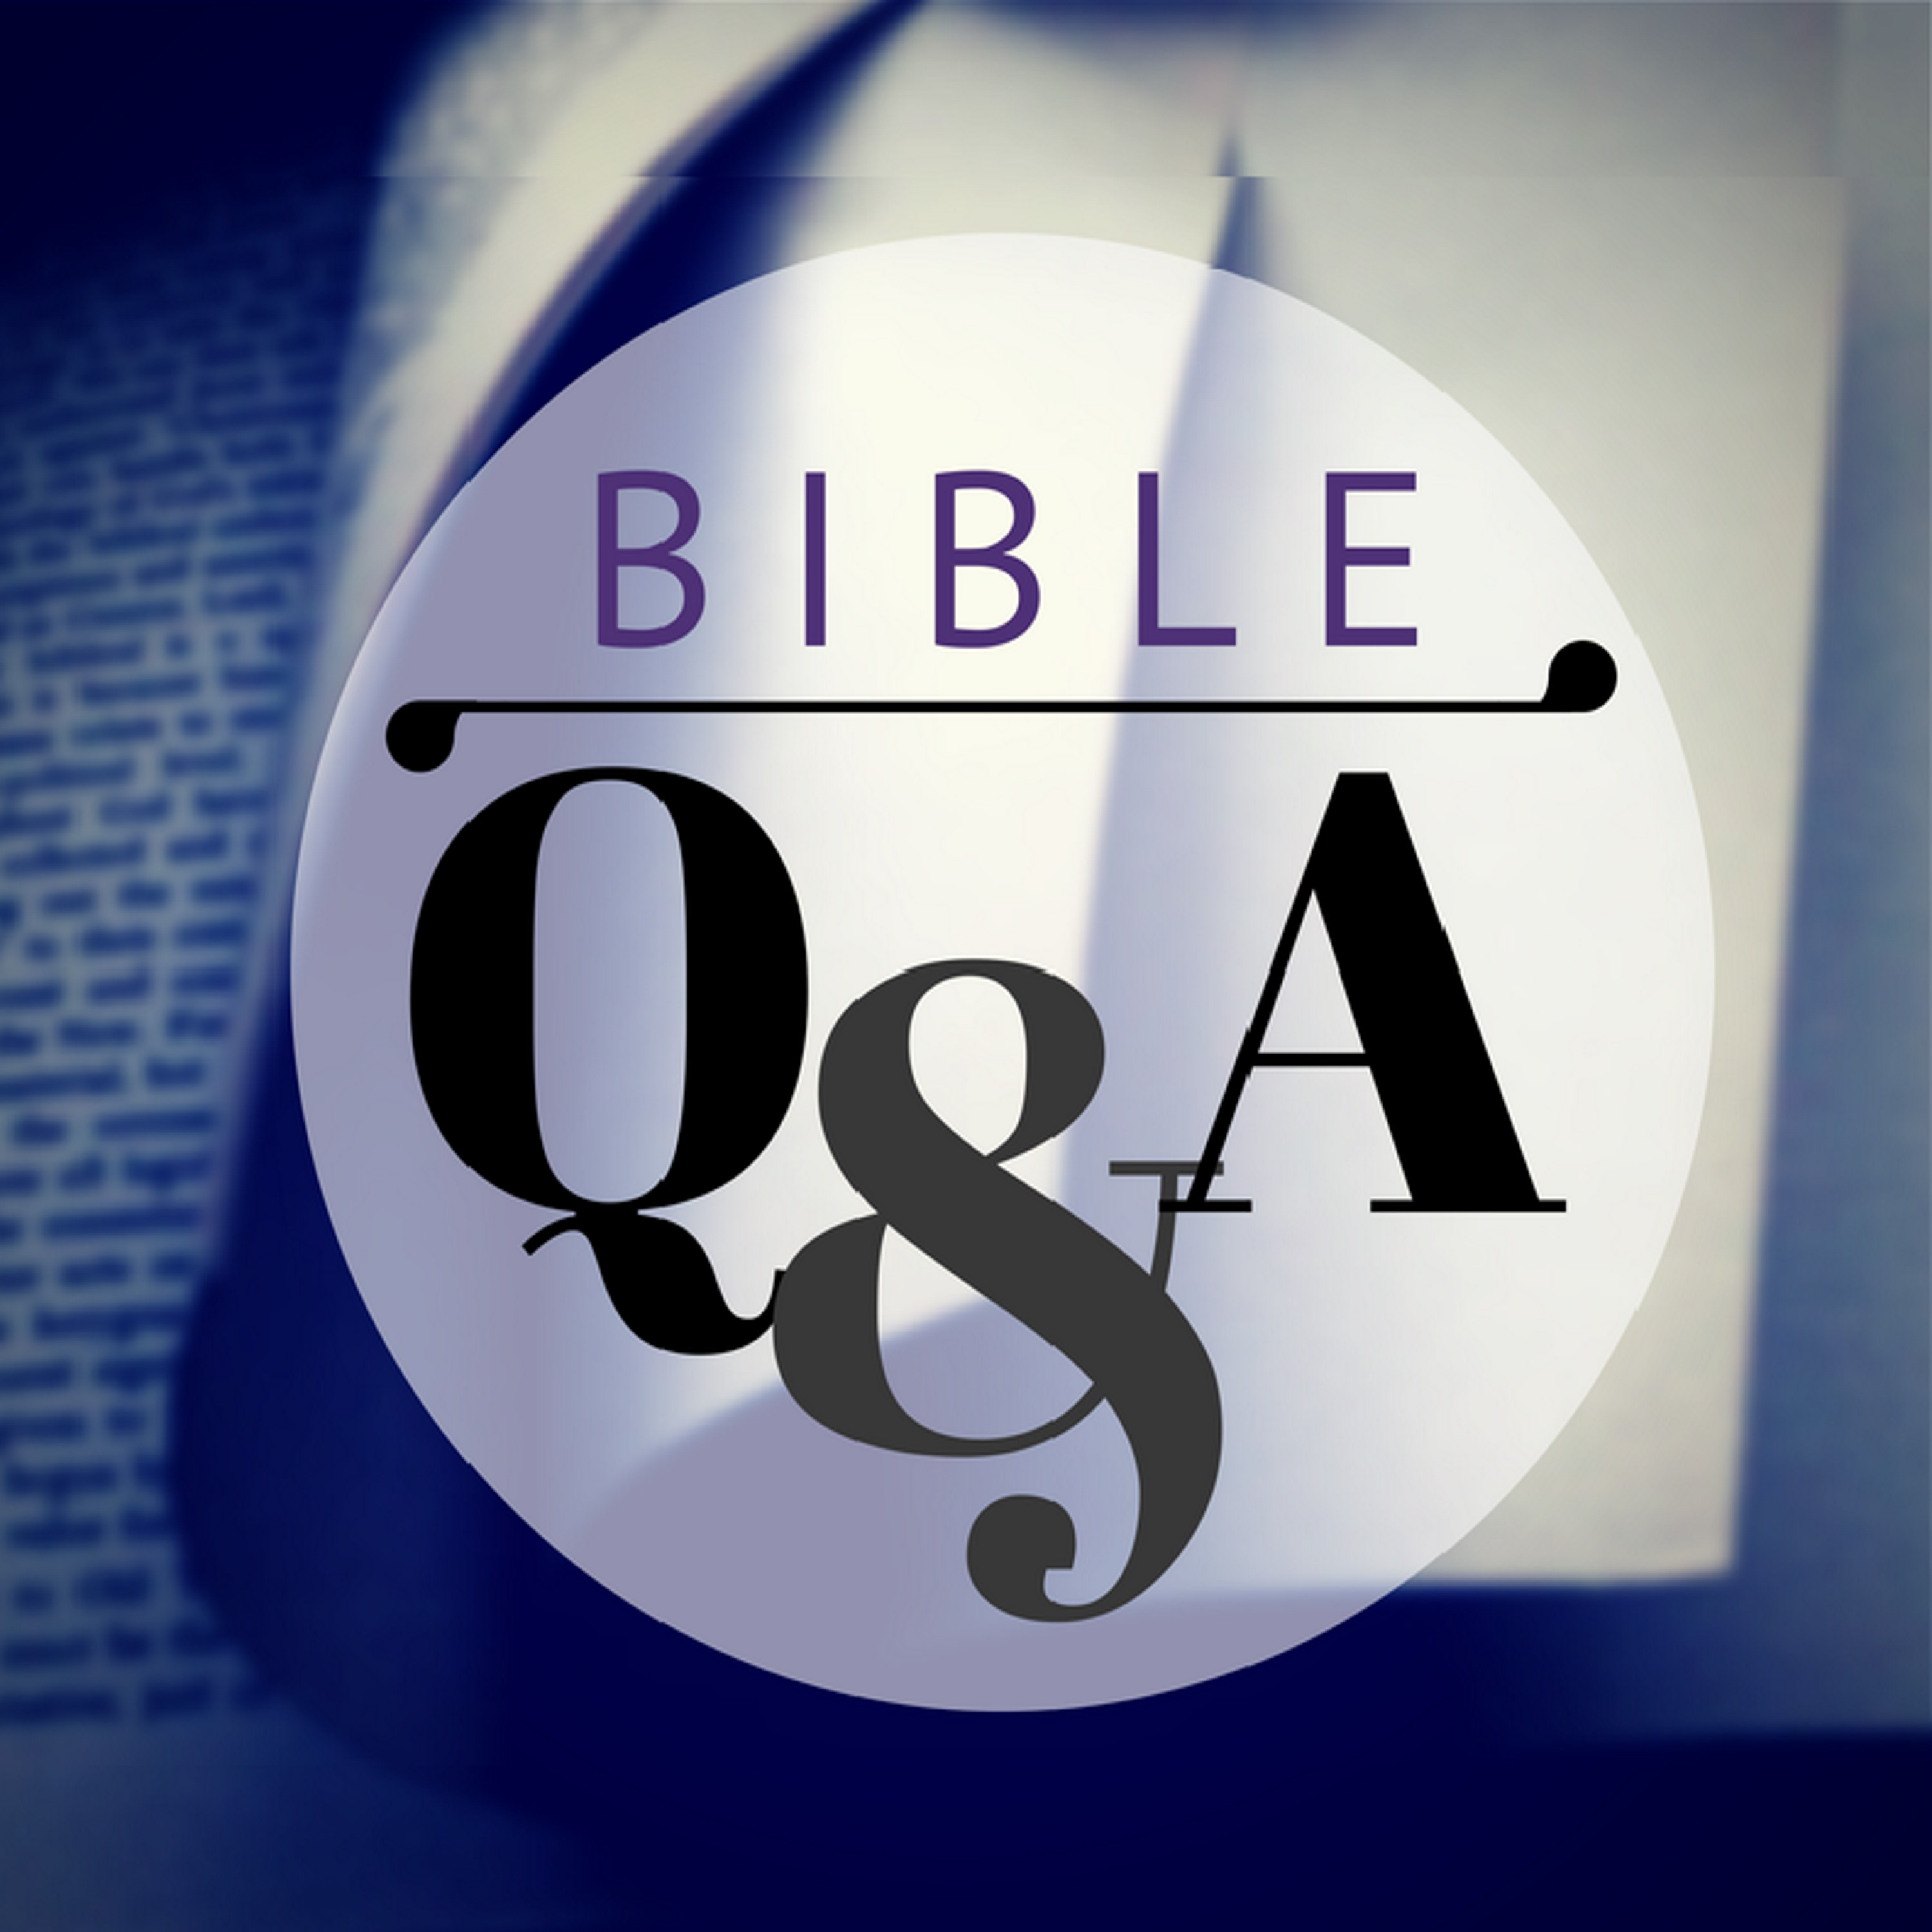 Was Cain a Believer? (Ask a Bible Teacher)